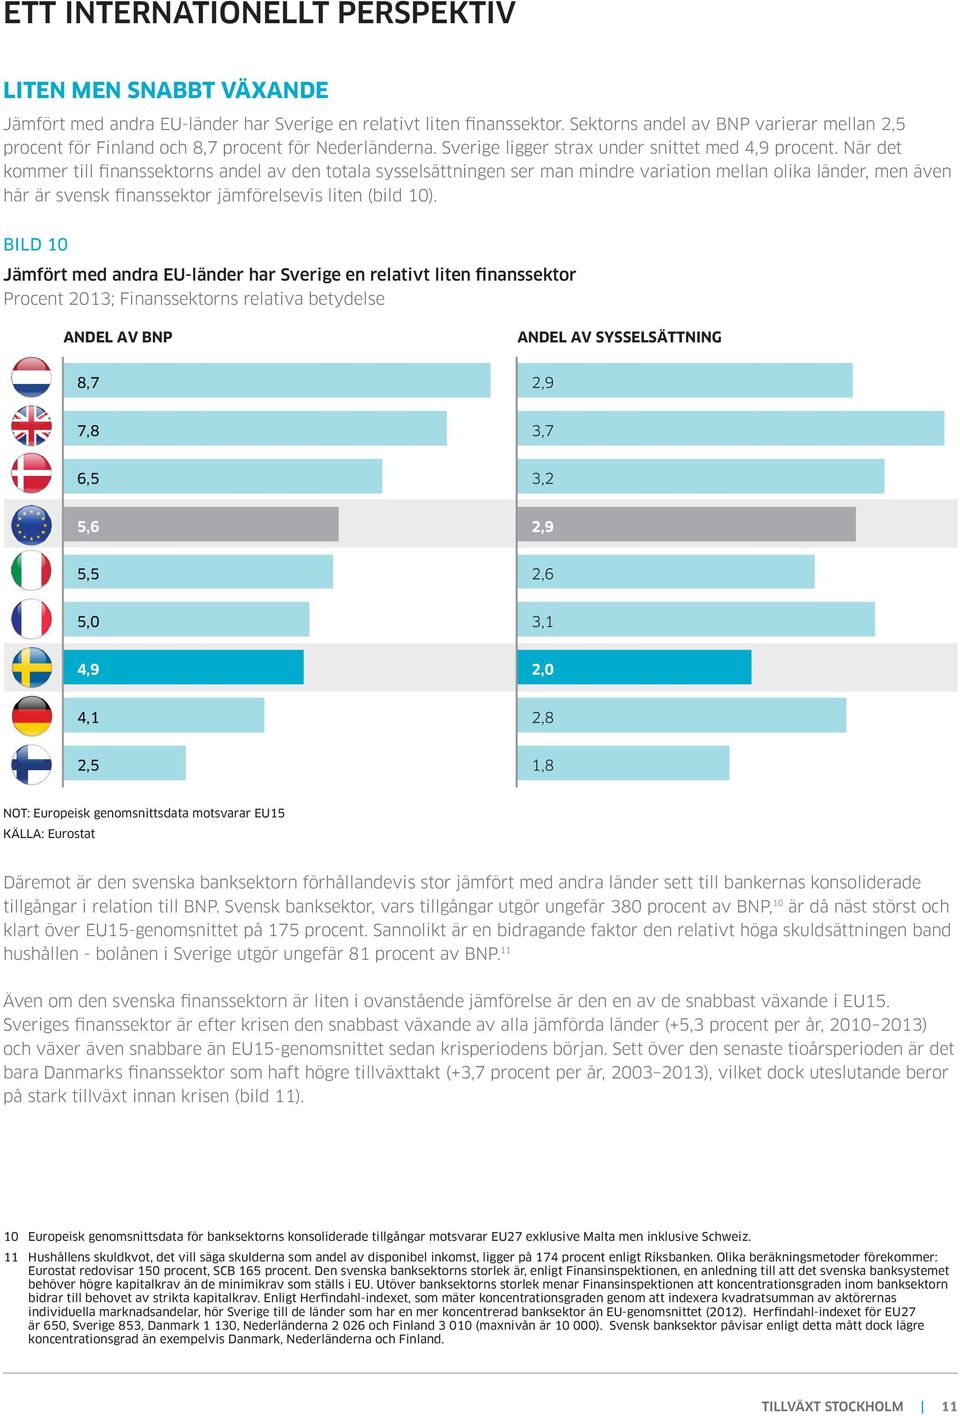 När det kommer till finanssektorns andel av den totala sysselsättningen ser man mindre variation mellan olika länder, men även här är svensk finanssektor jämförelsevis liten (bild 10).